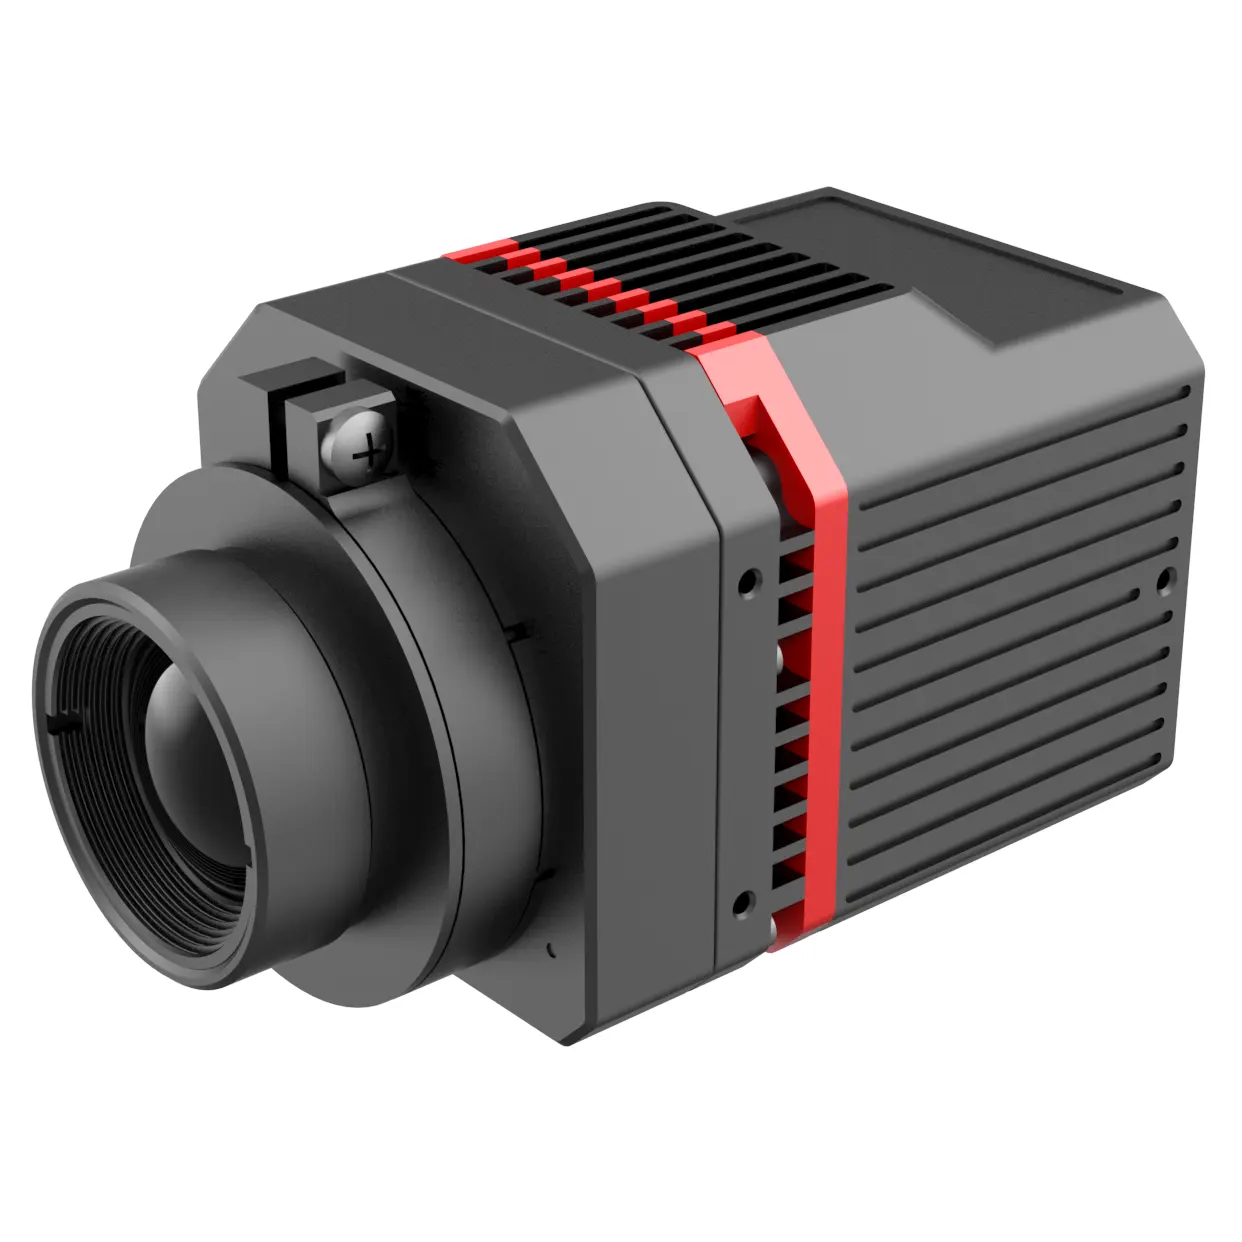 IR-CAM100 series Infrared thermal imaging Temperature SENSOR industrial GigE camera